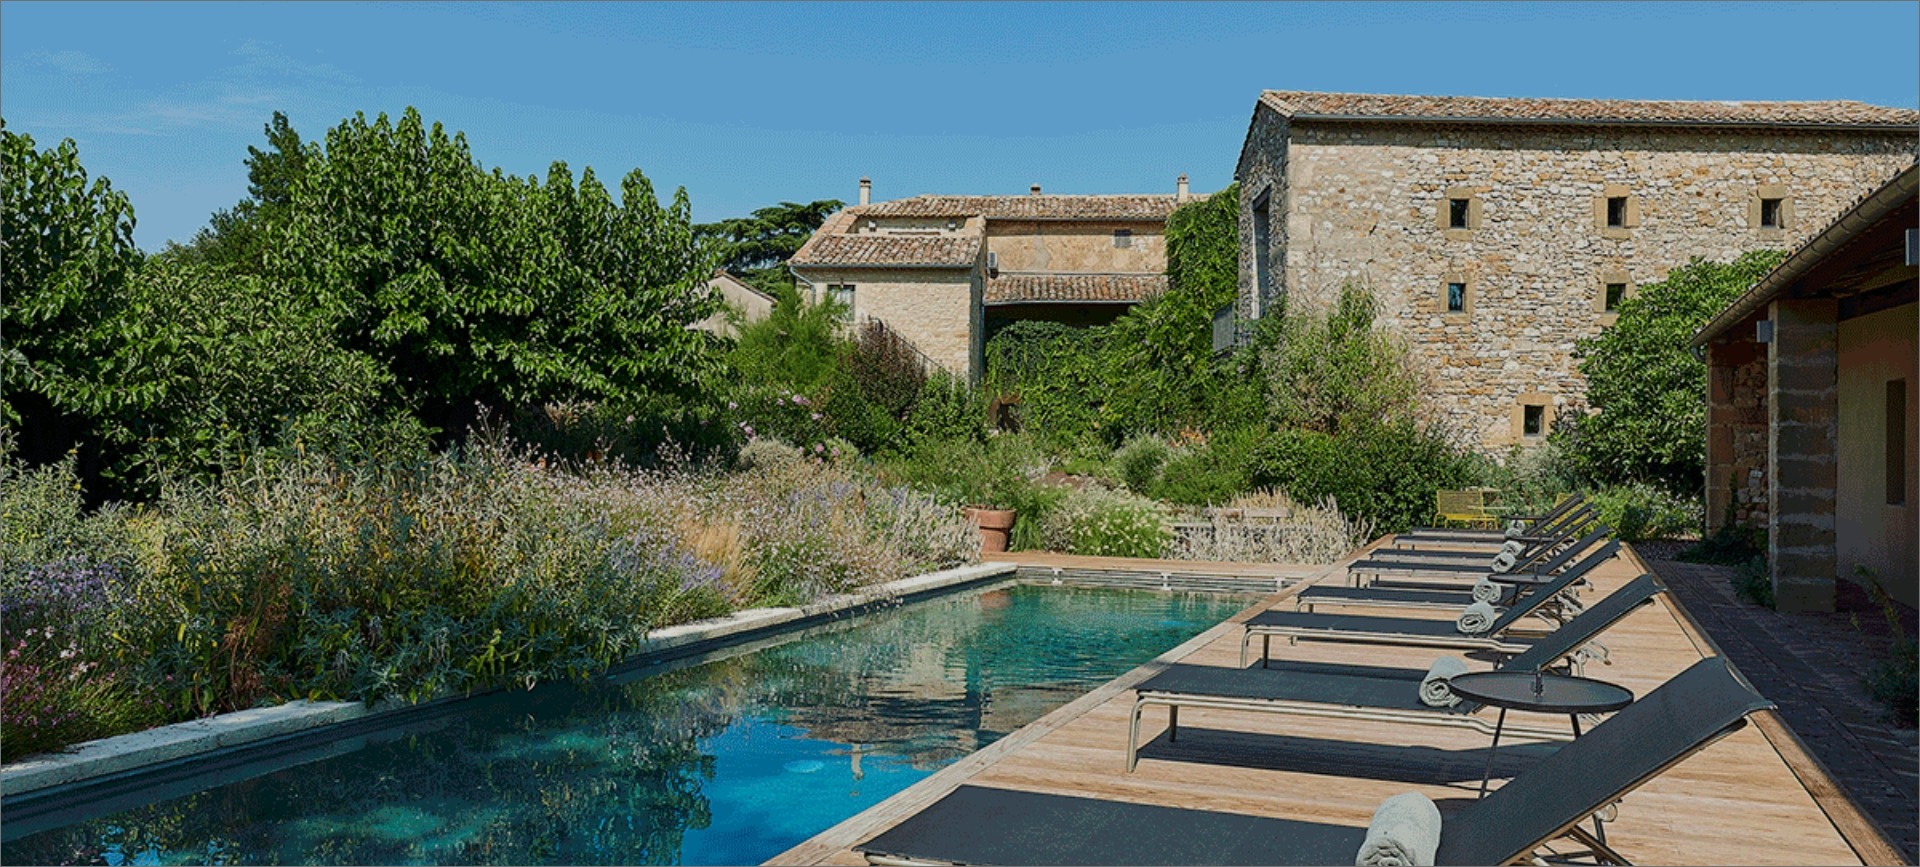 Maison d'Ulysse - Mas de Charme en Provence